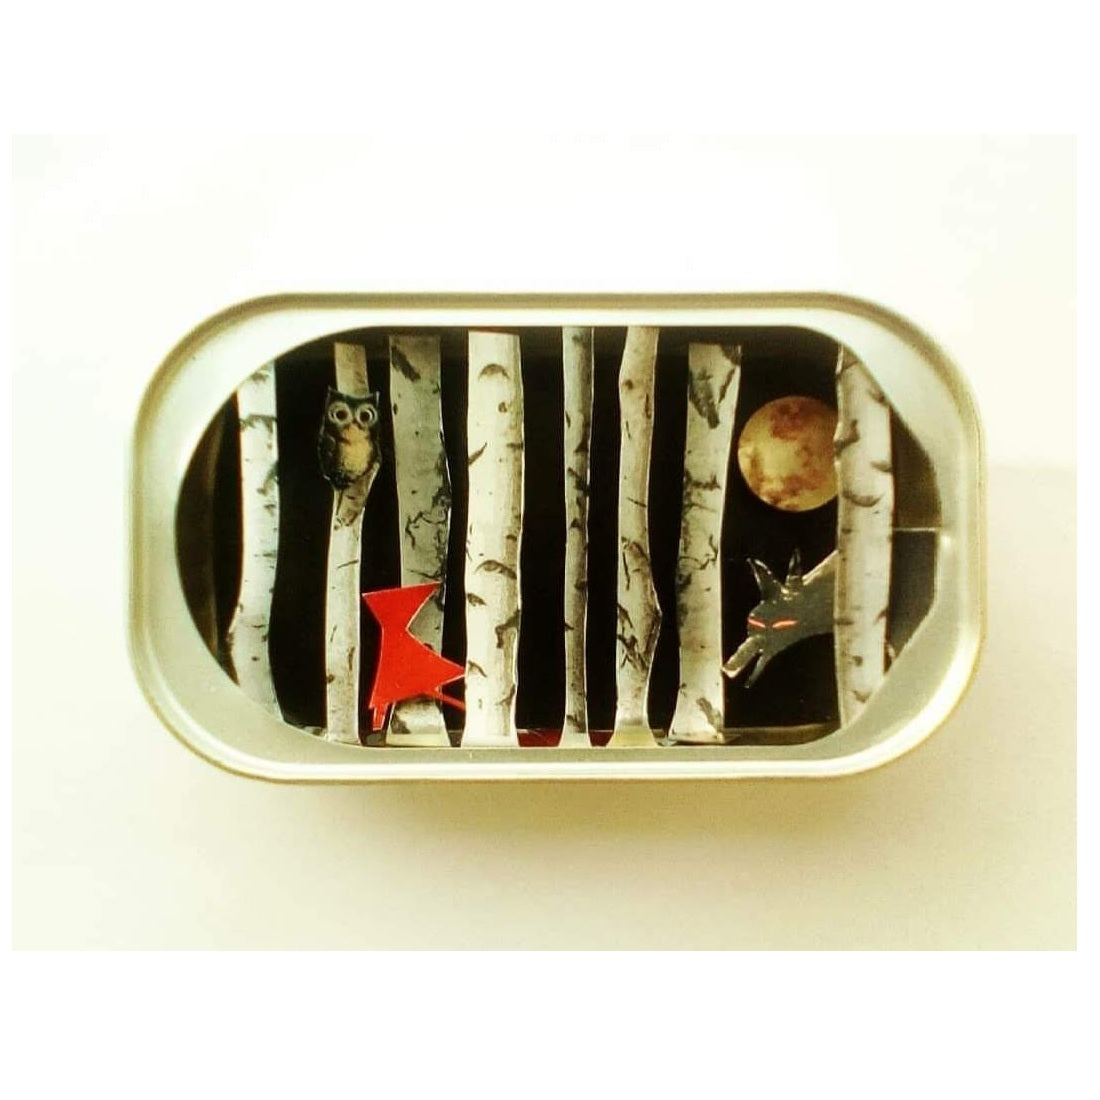  Arte en lata - Caperucita  - by desechorehecho - peliculas en latas de conserva - arte de metal